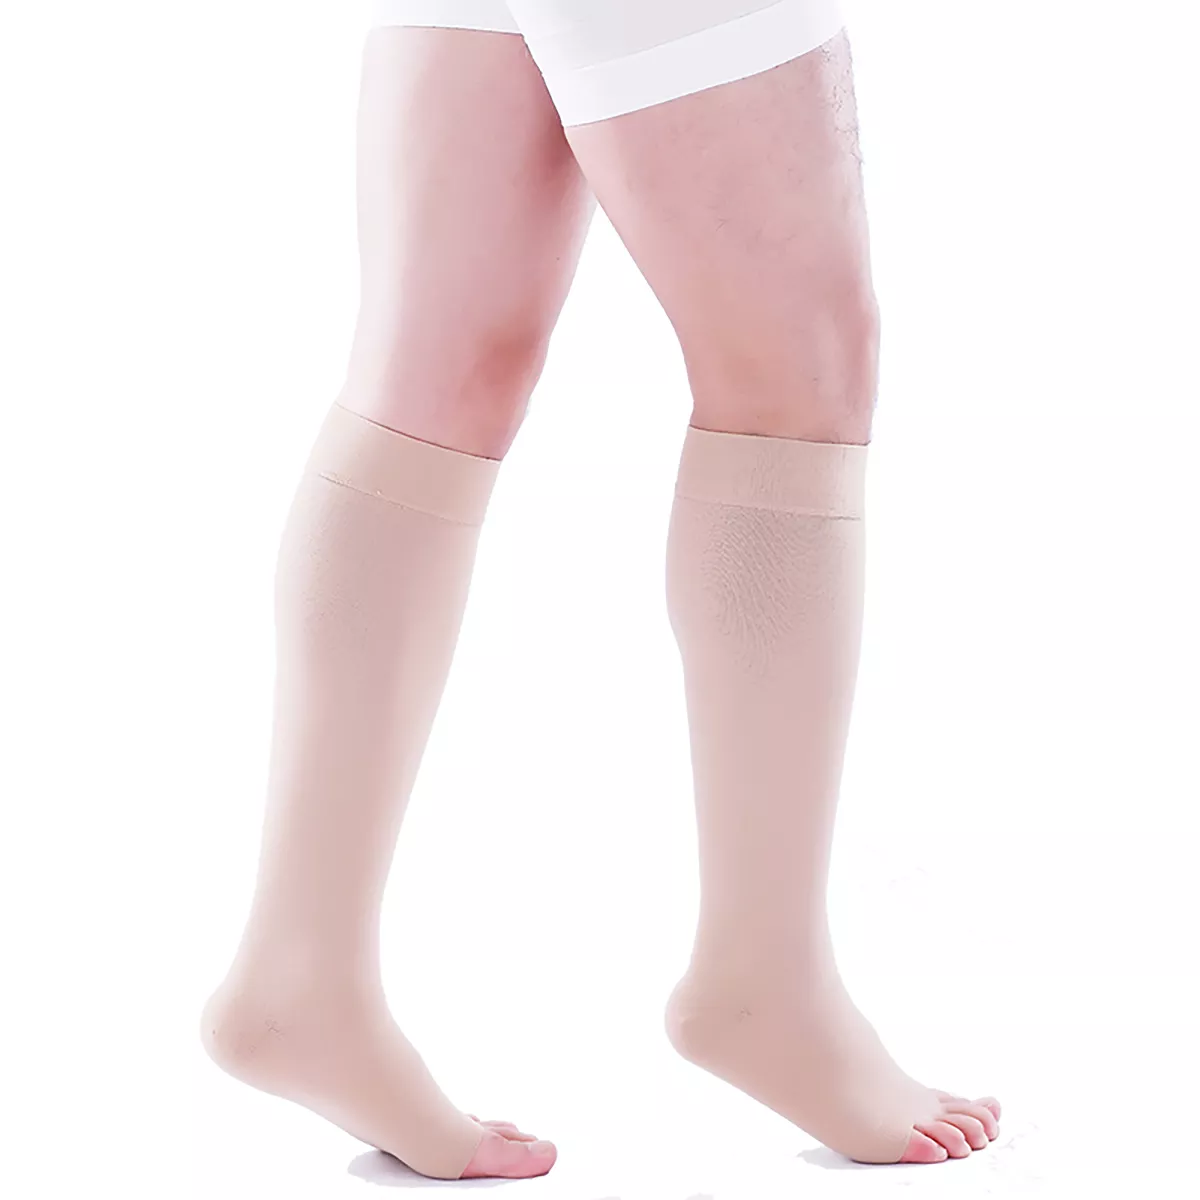 Varcoh ® 30-40 mmHg Men Knee High Open Toe Compression Socks Beige